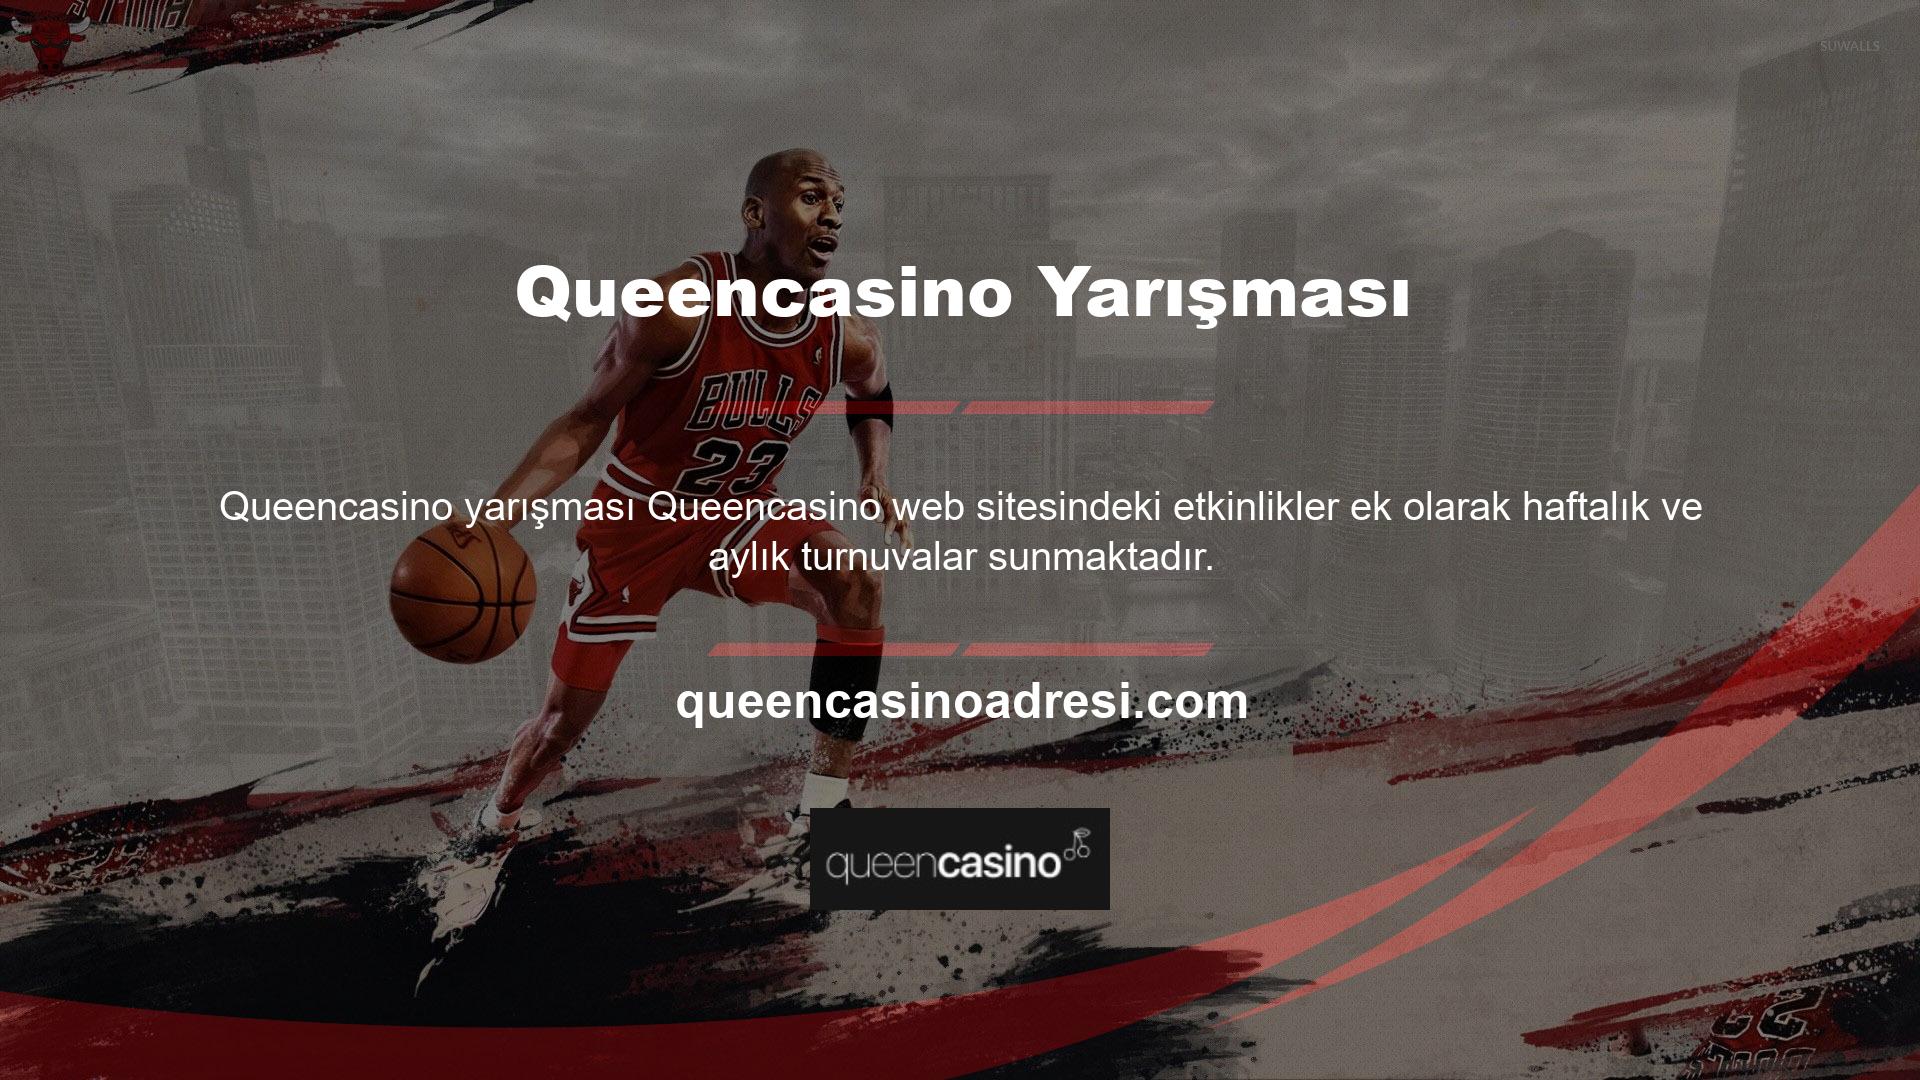 Queencasino yarışmaları ünlü oyun sağlayıcıları tarafından düzenlenmektedir